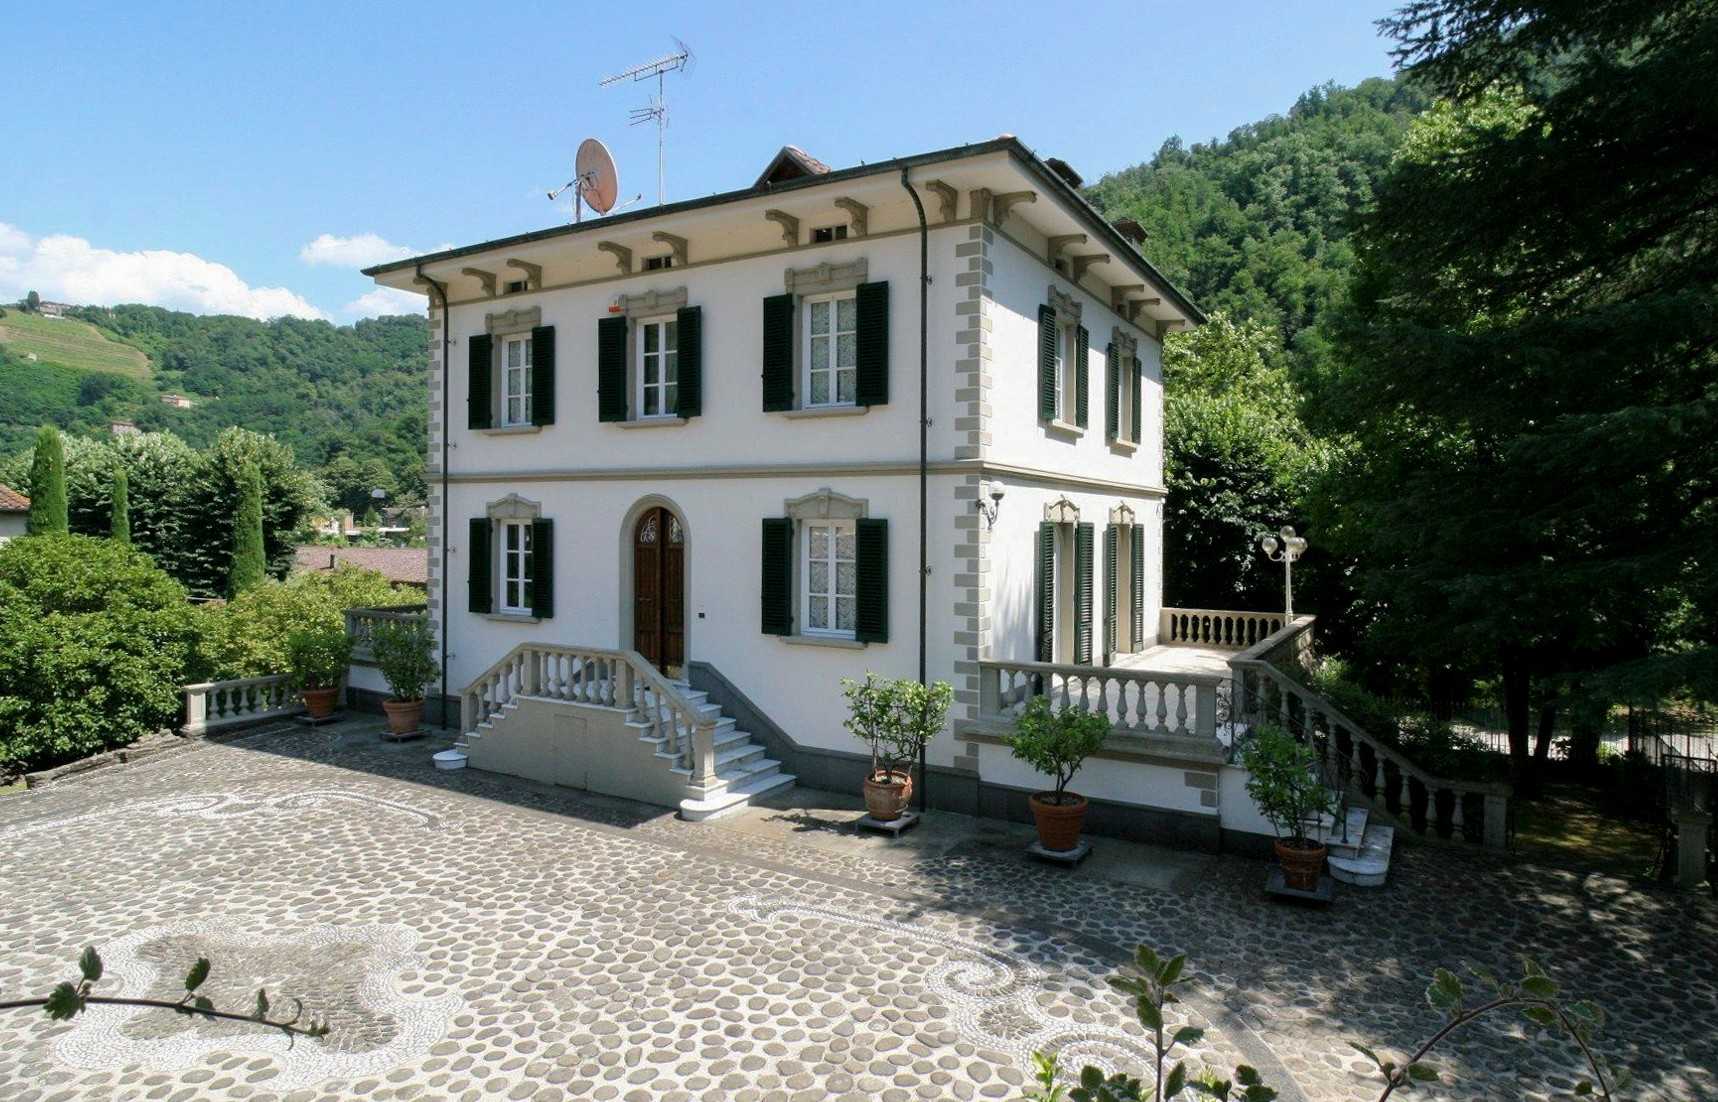 Fotos Villa toscana en Bagni di Lucca con casa solariega, granja y parque